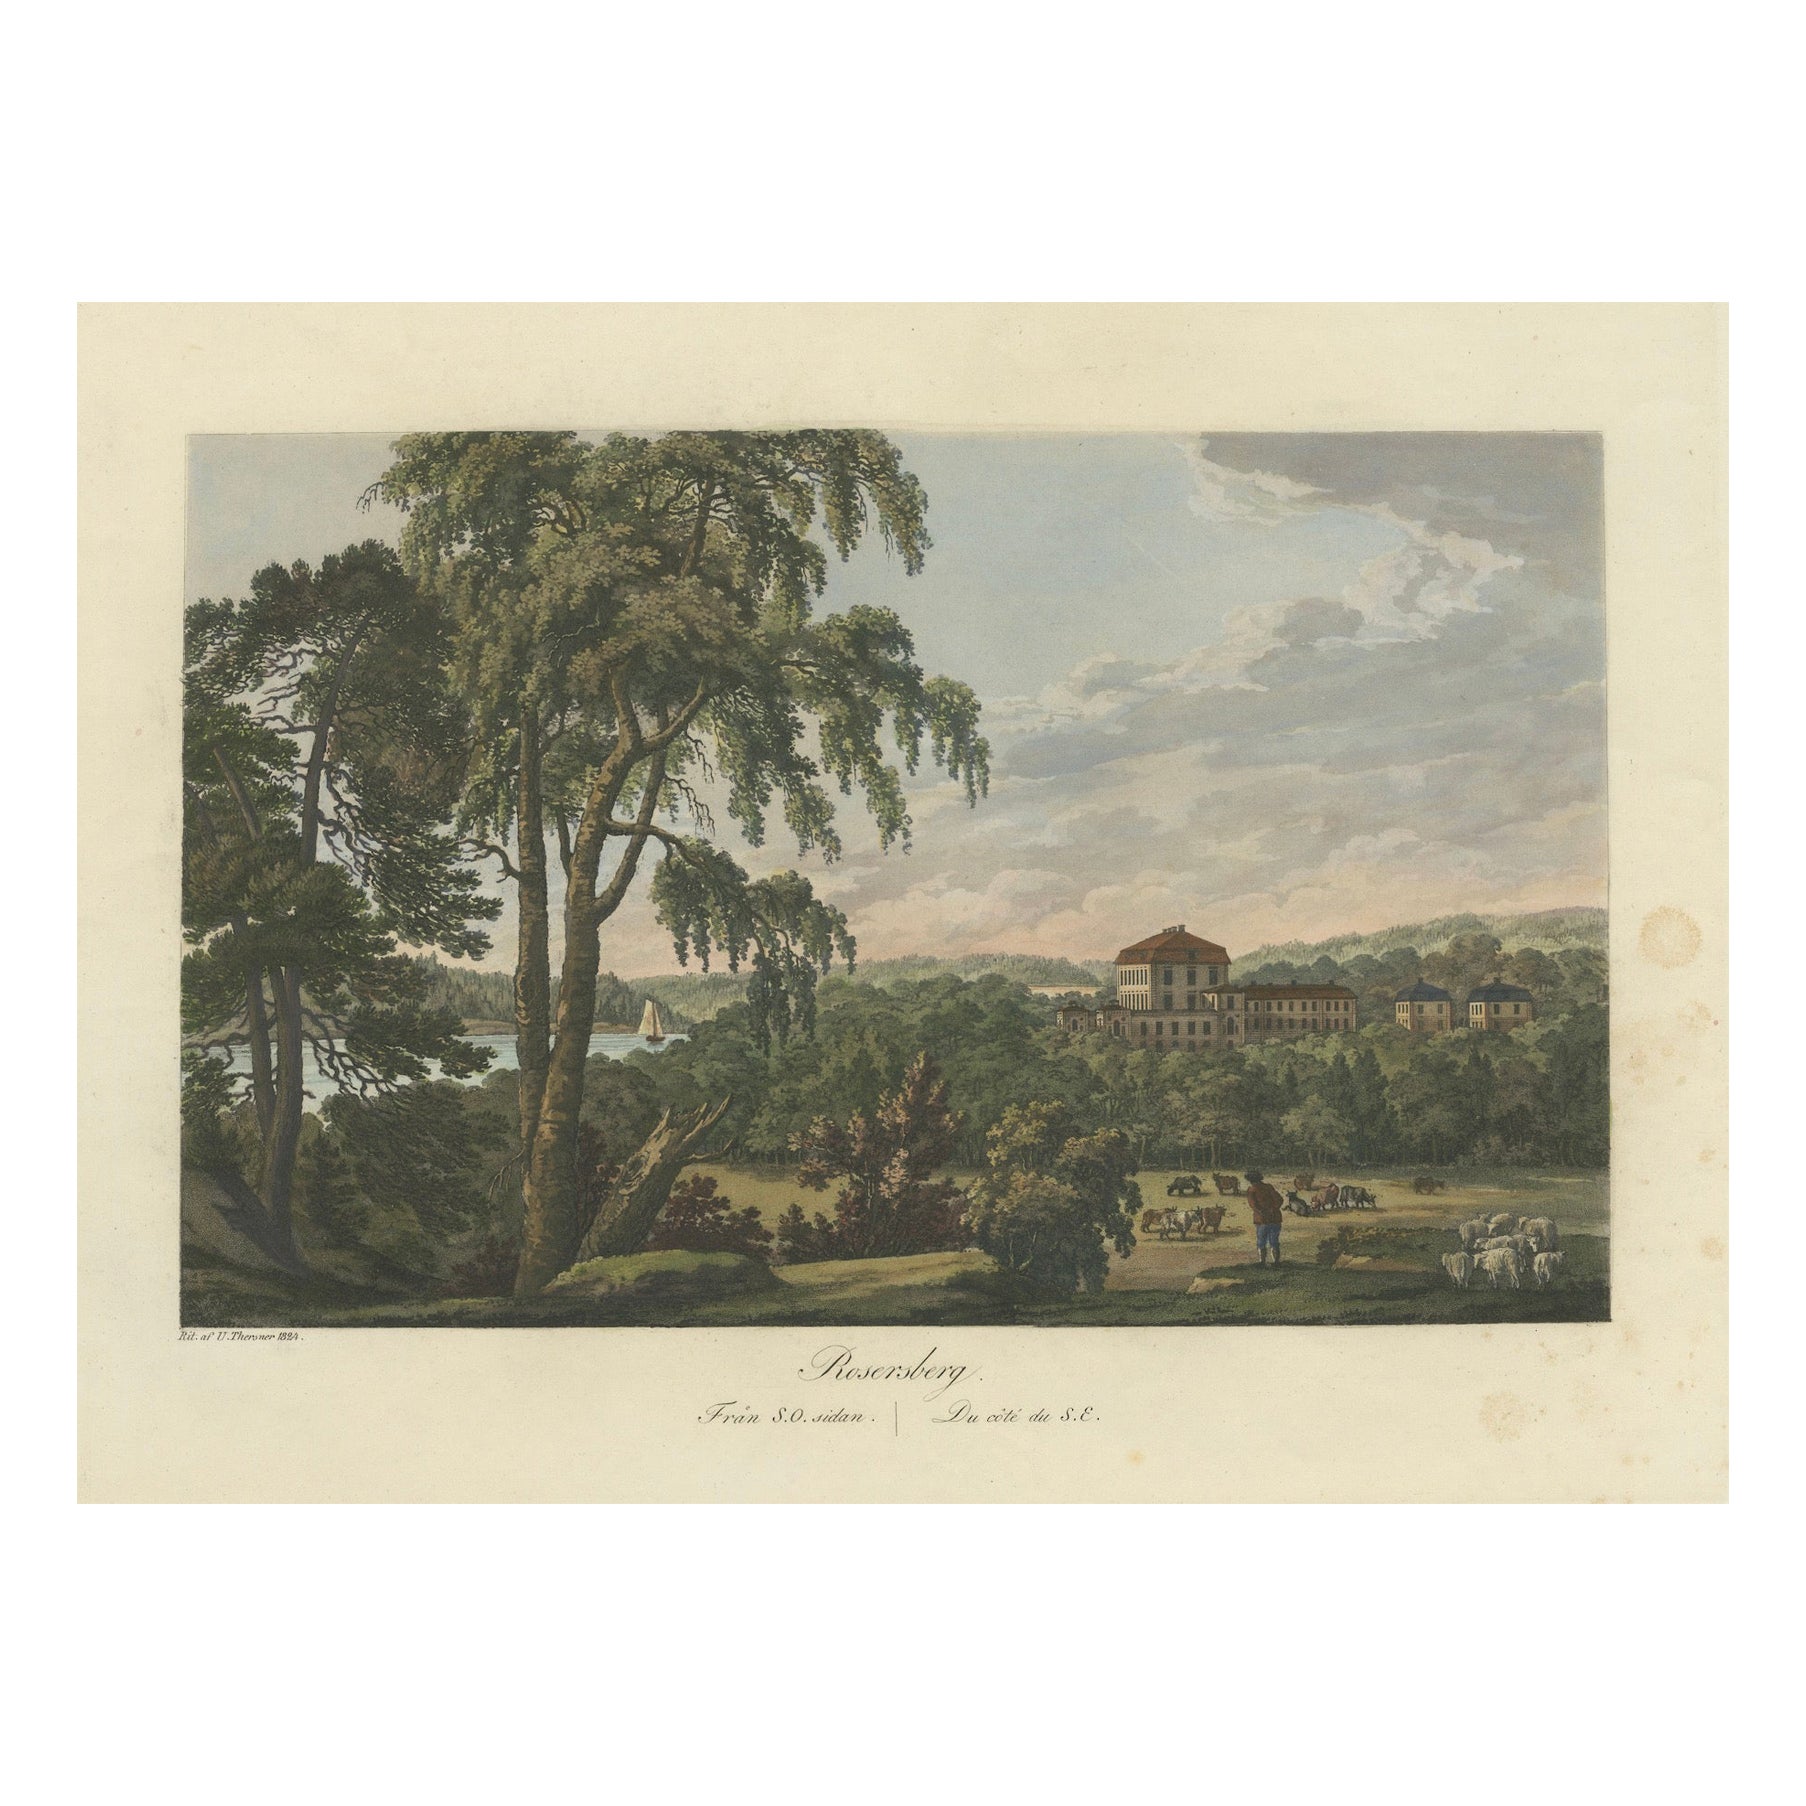 Elegance pastorale : Aquatinte du château de Djursholm réalisée par Ulrik Thersner en 1824